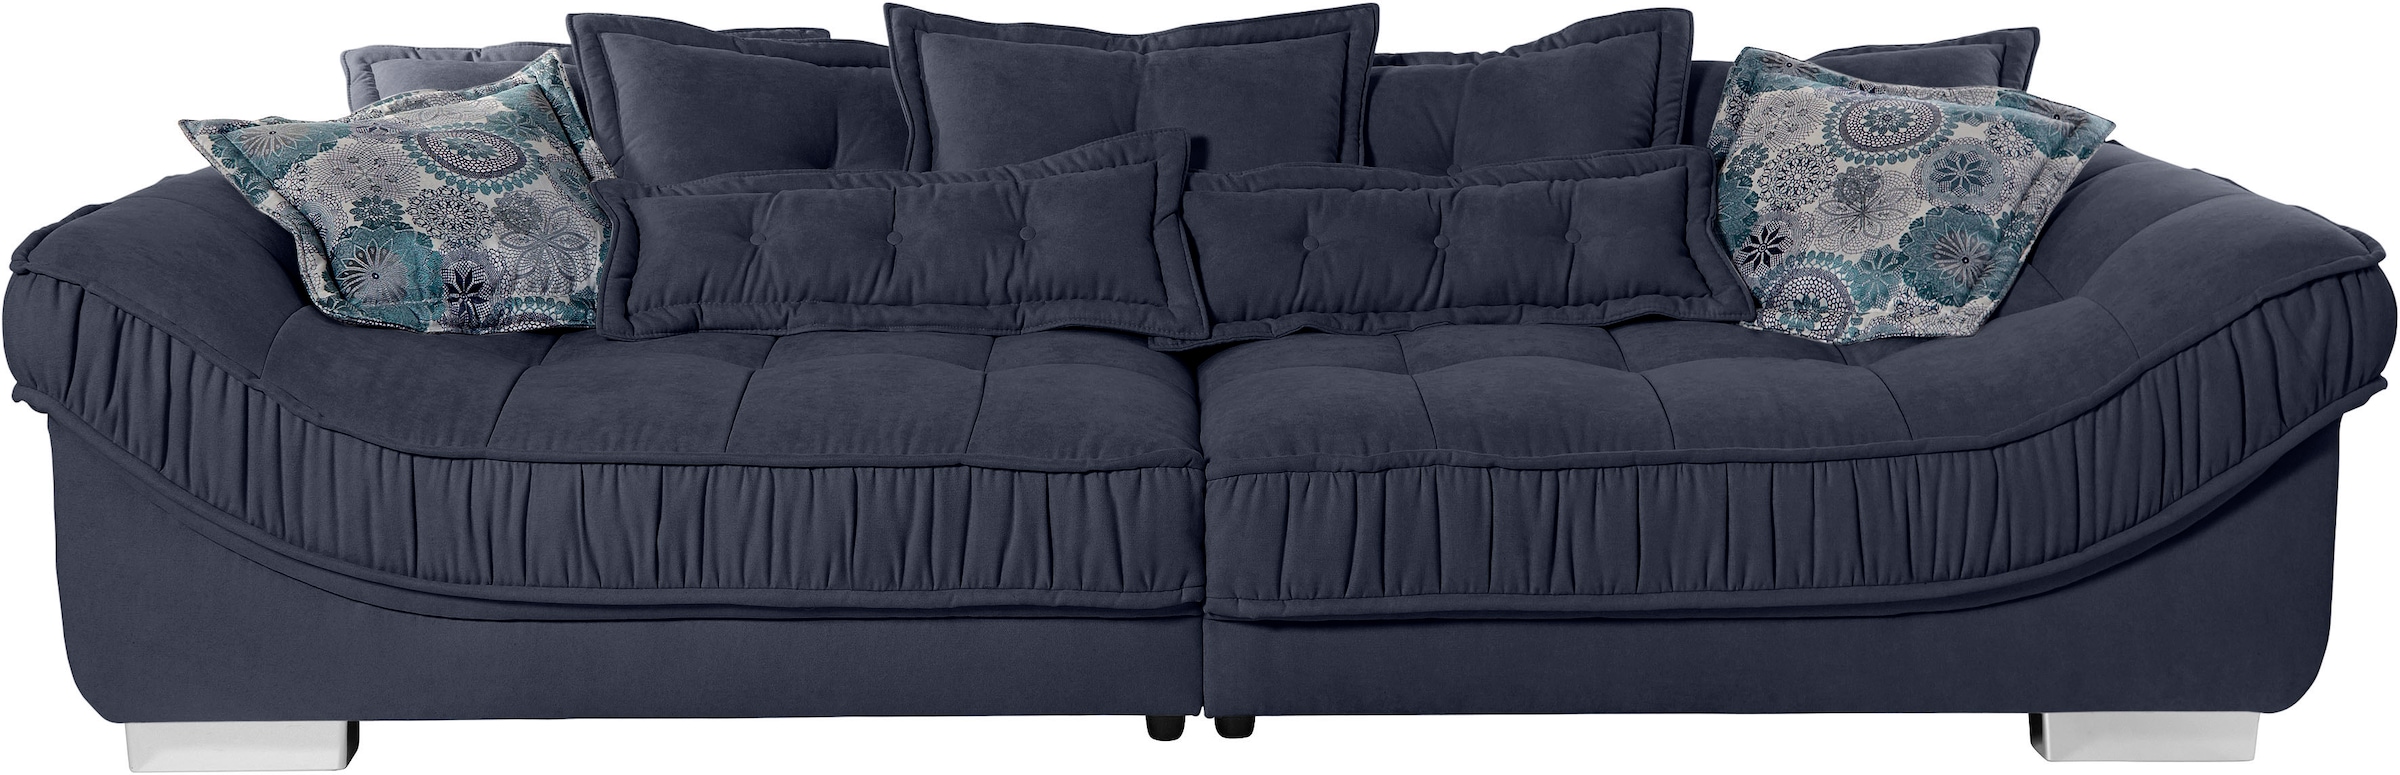 Big-Sofa »Diwan«, hochwertige Polsterung für bis zu 140 kg Belastbarkeit pro Sitzfläche